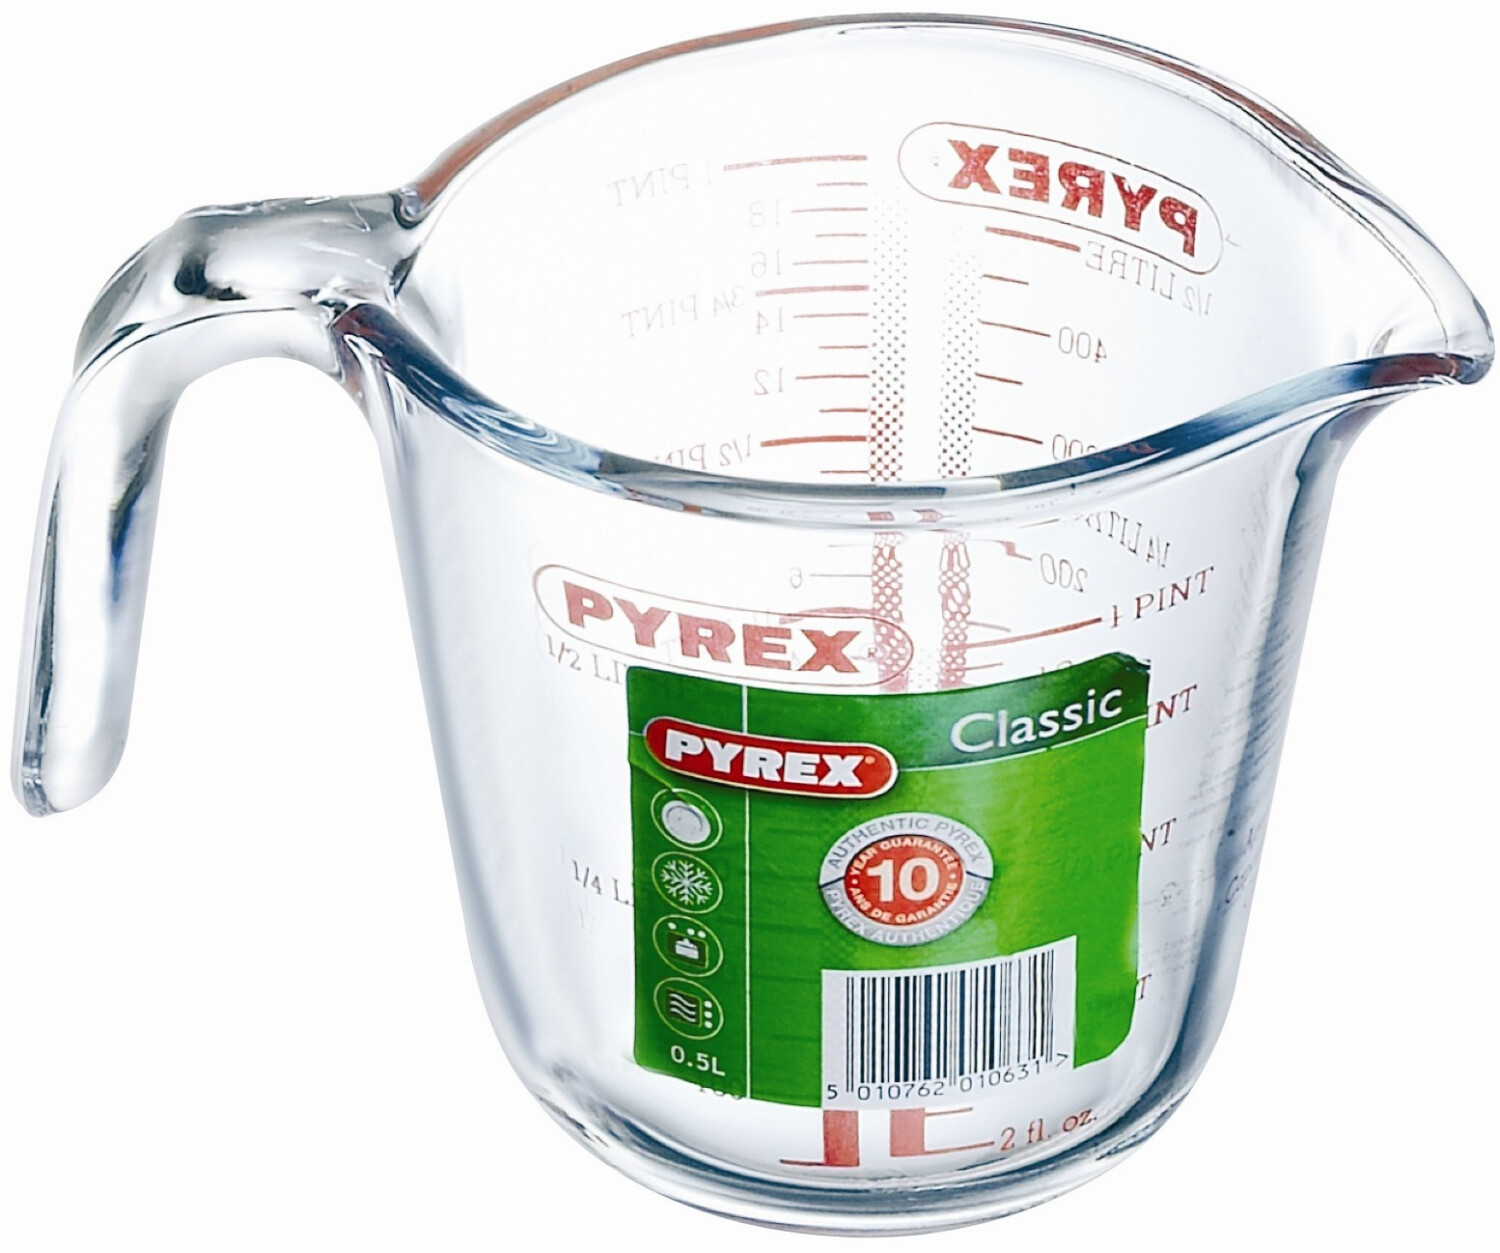 Pyrex - Classic - Broc Mesureur en Verre 0.50 L …